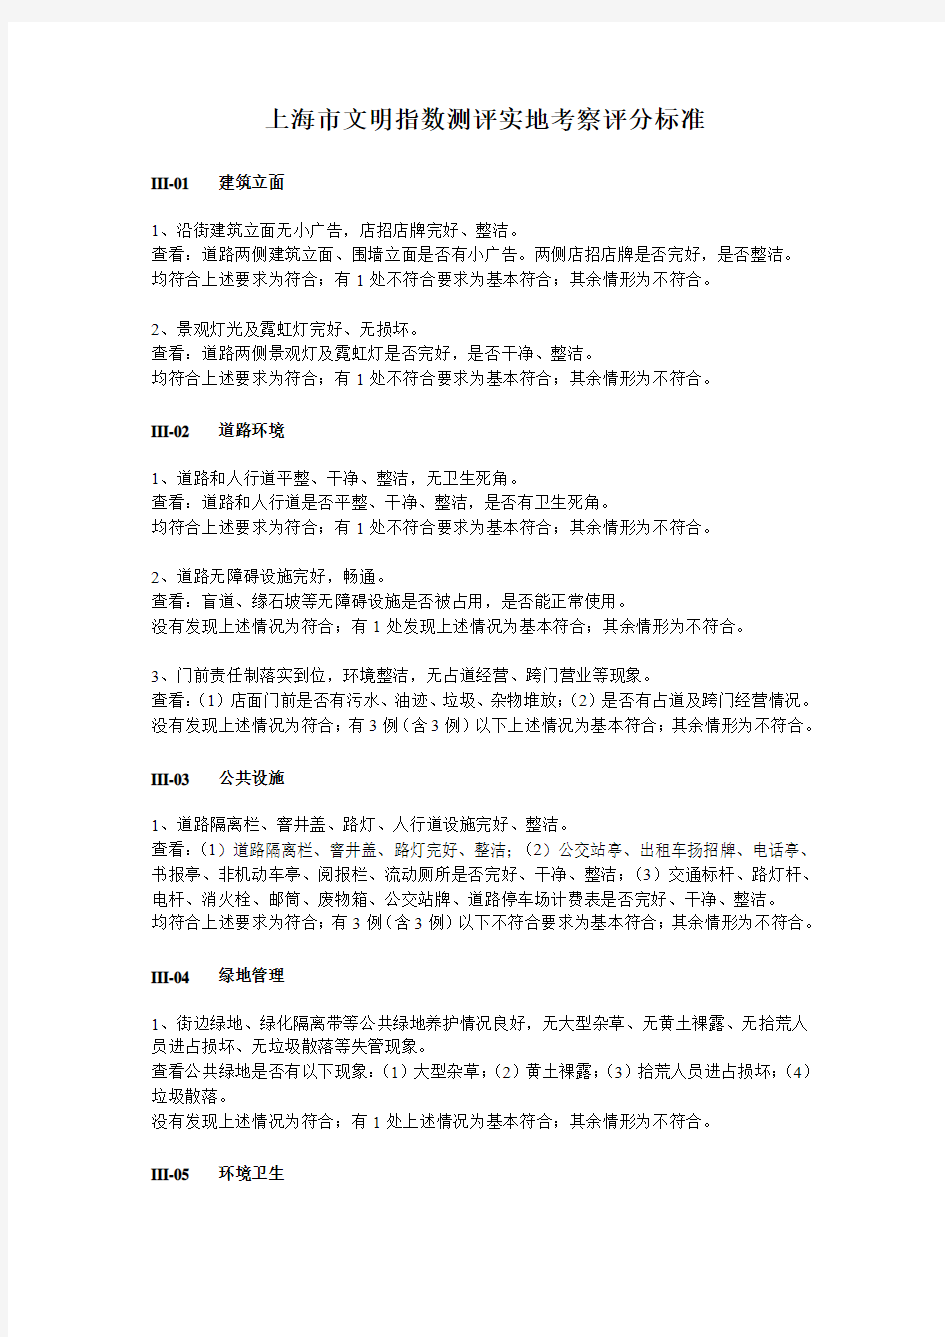 上海市文明指数测评评分标准